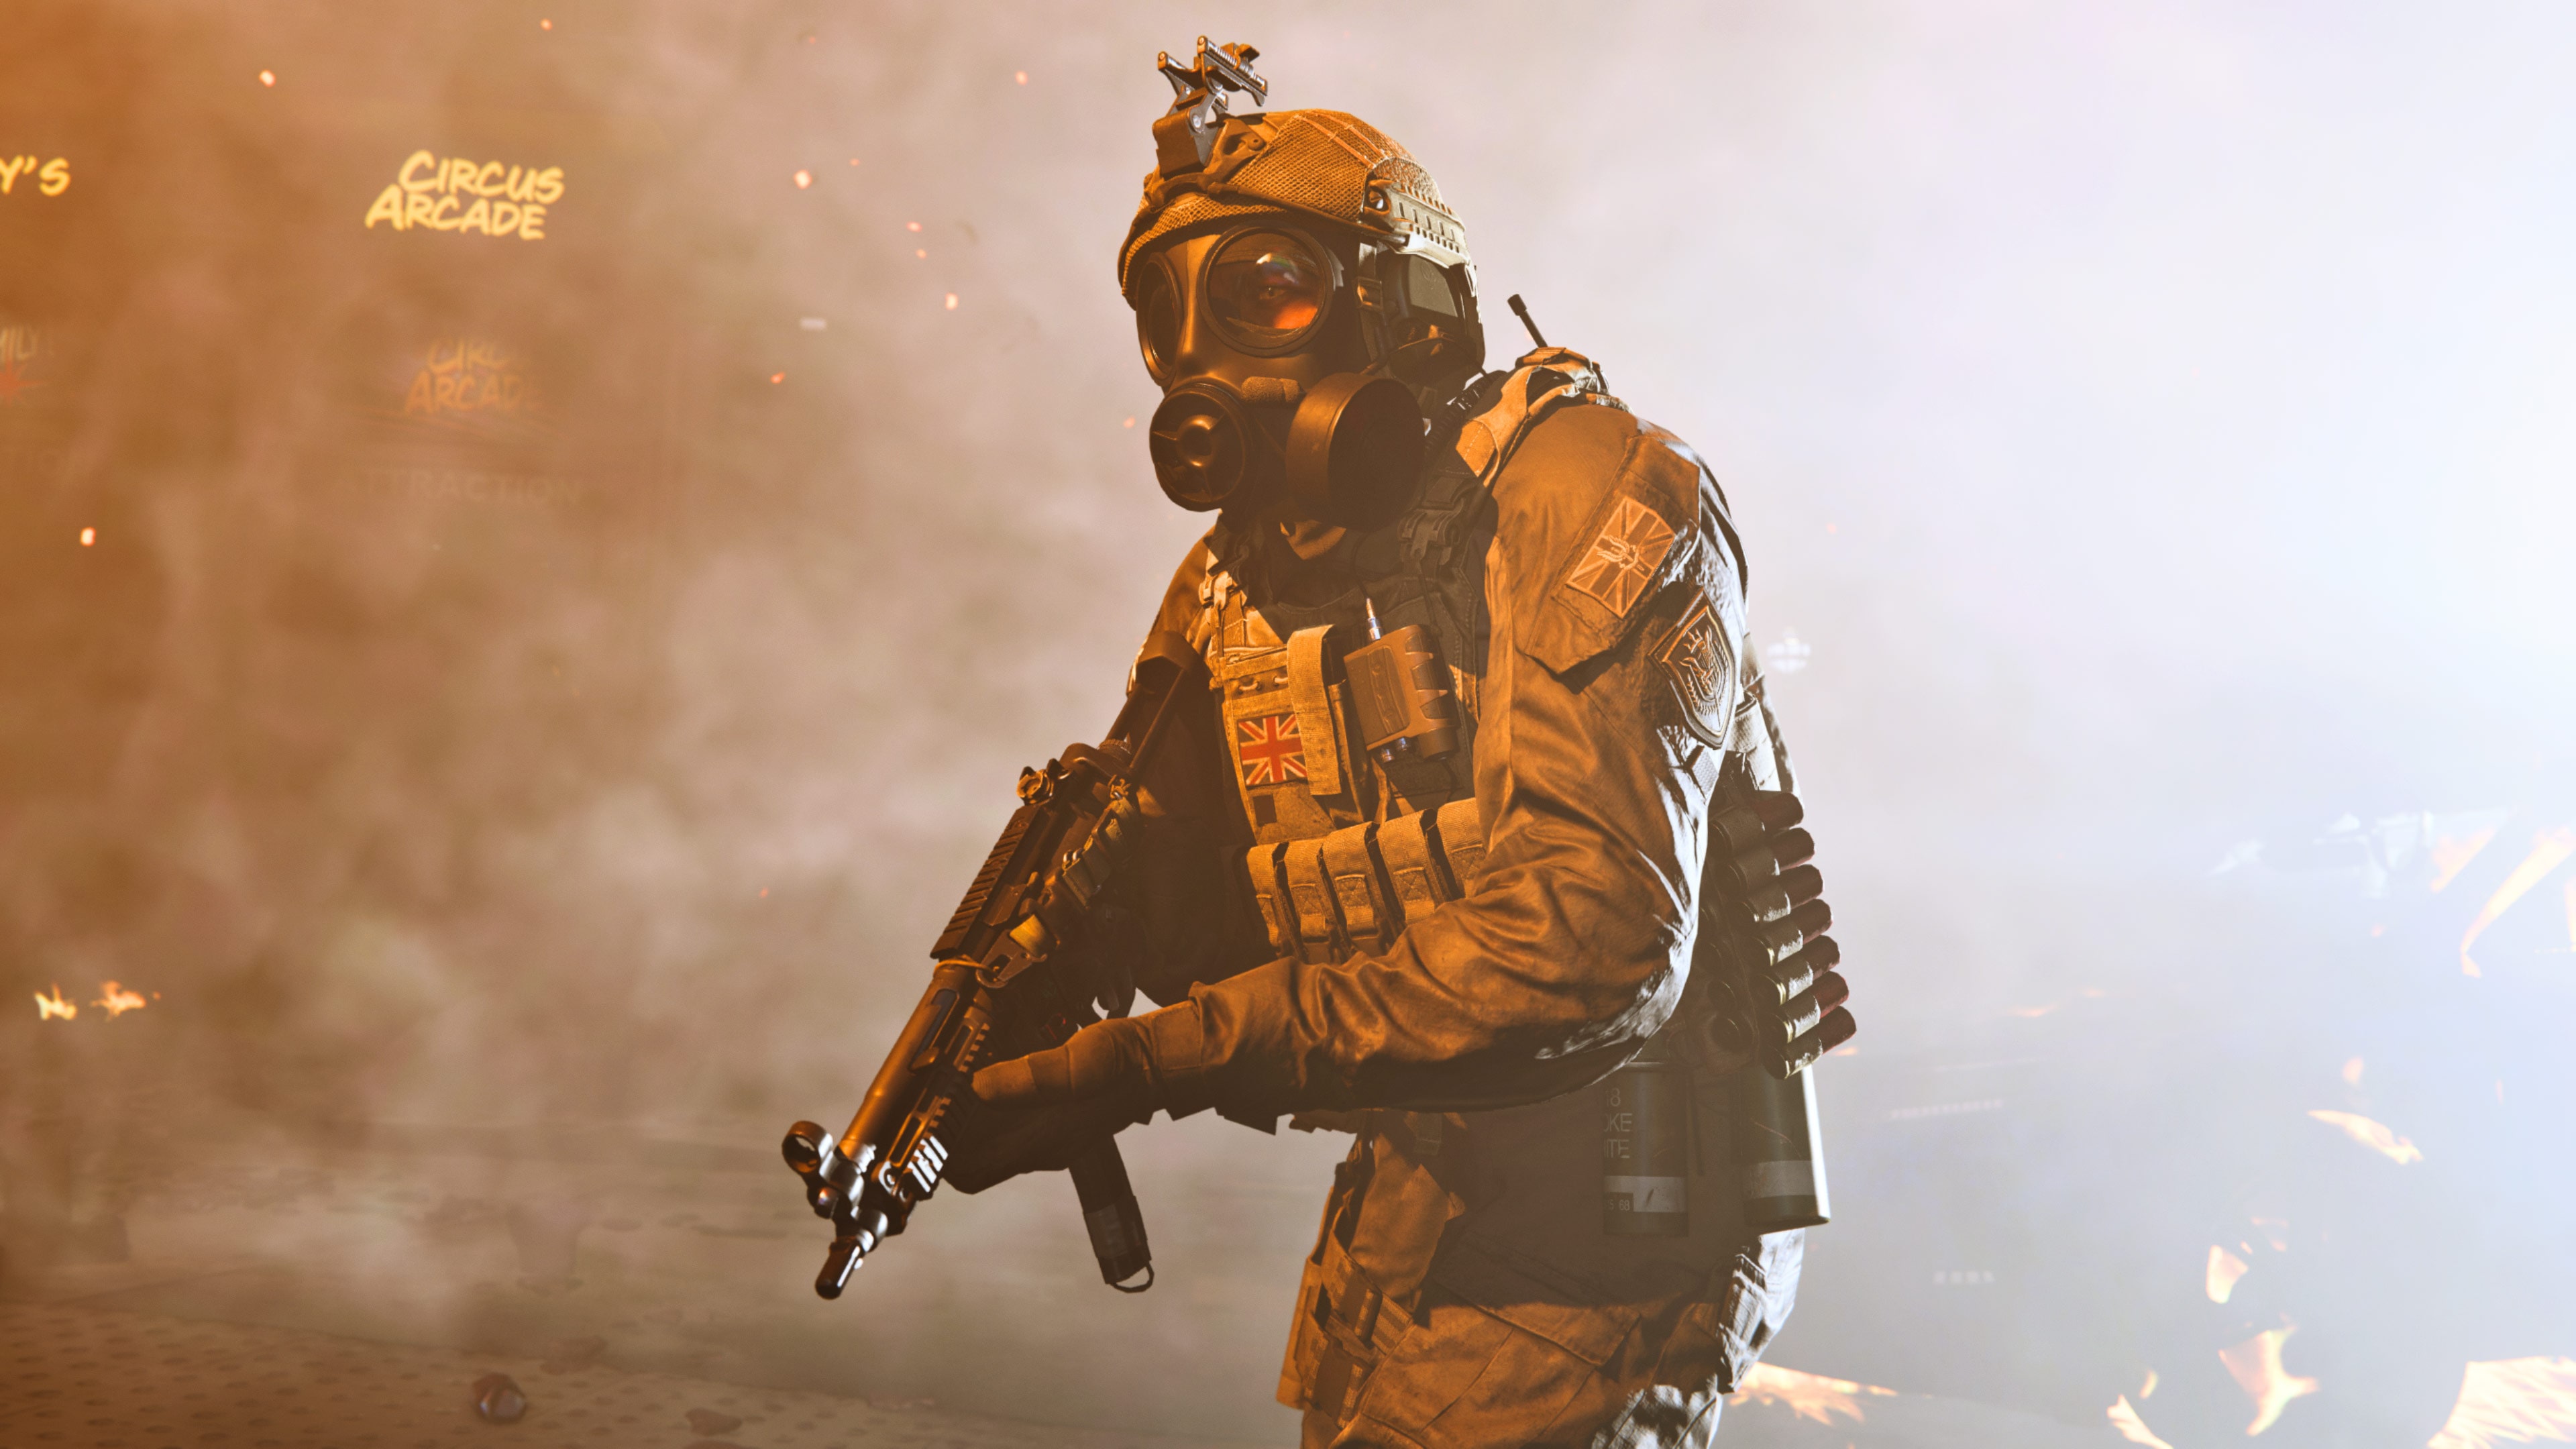 Prix Call Duty Modern Warfare Playstation Store - Sony Playstation